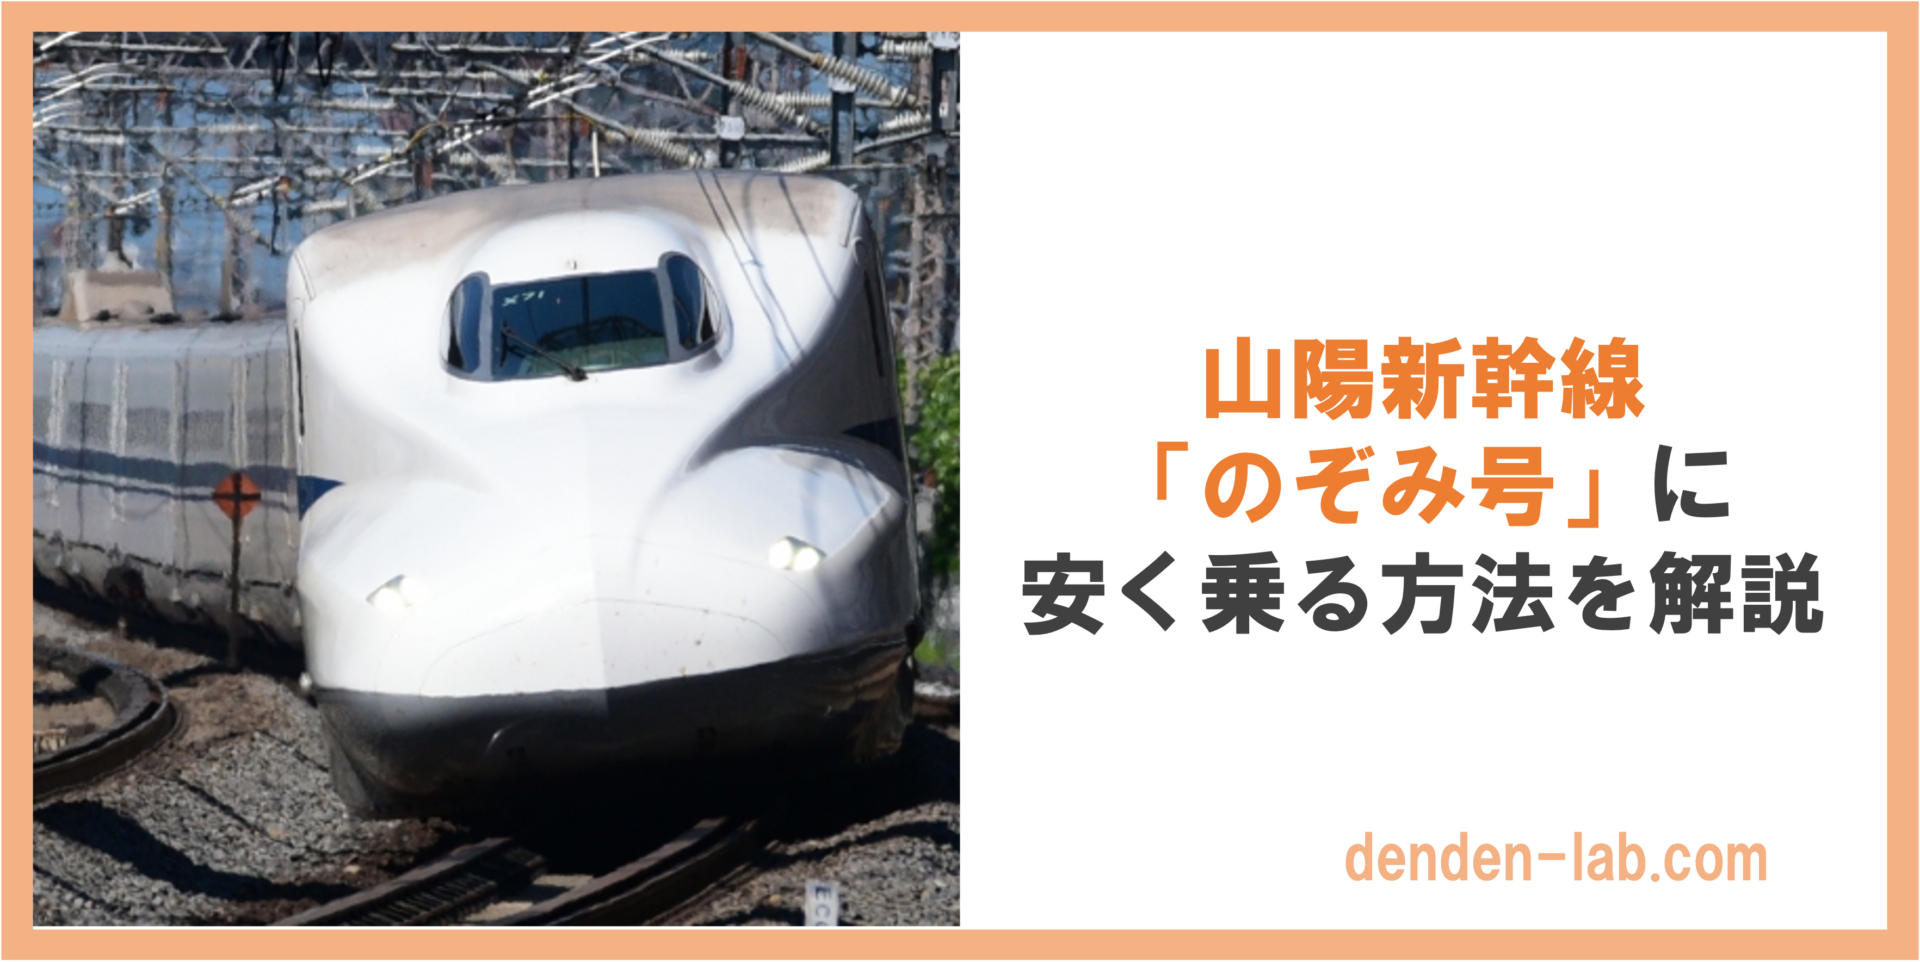 山陽新幹線 「のぞみ号」に 安く乗る方法を解説